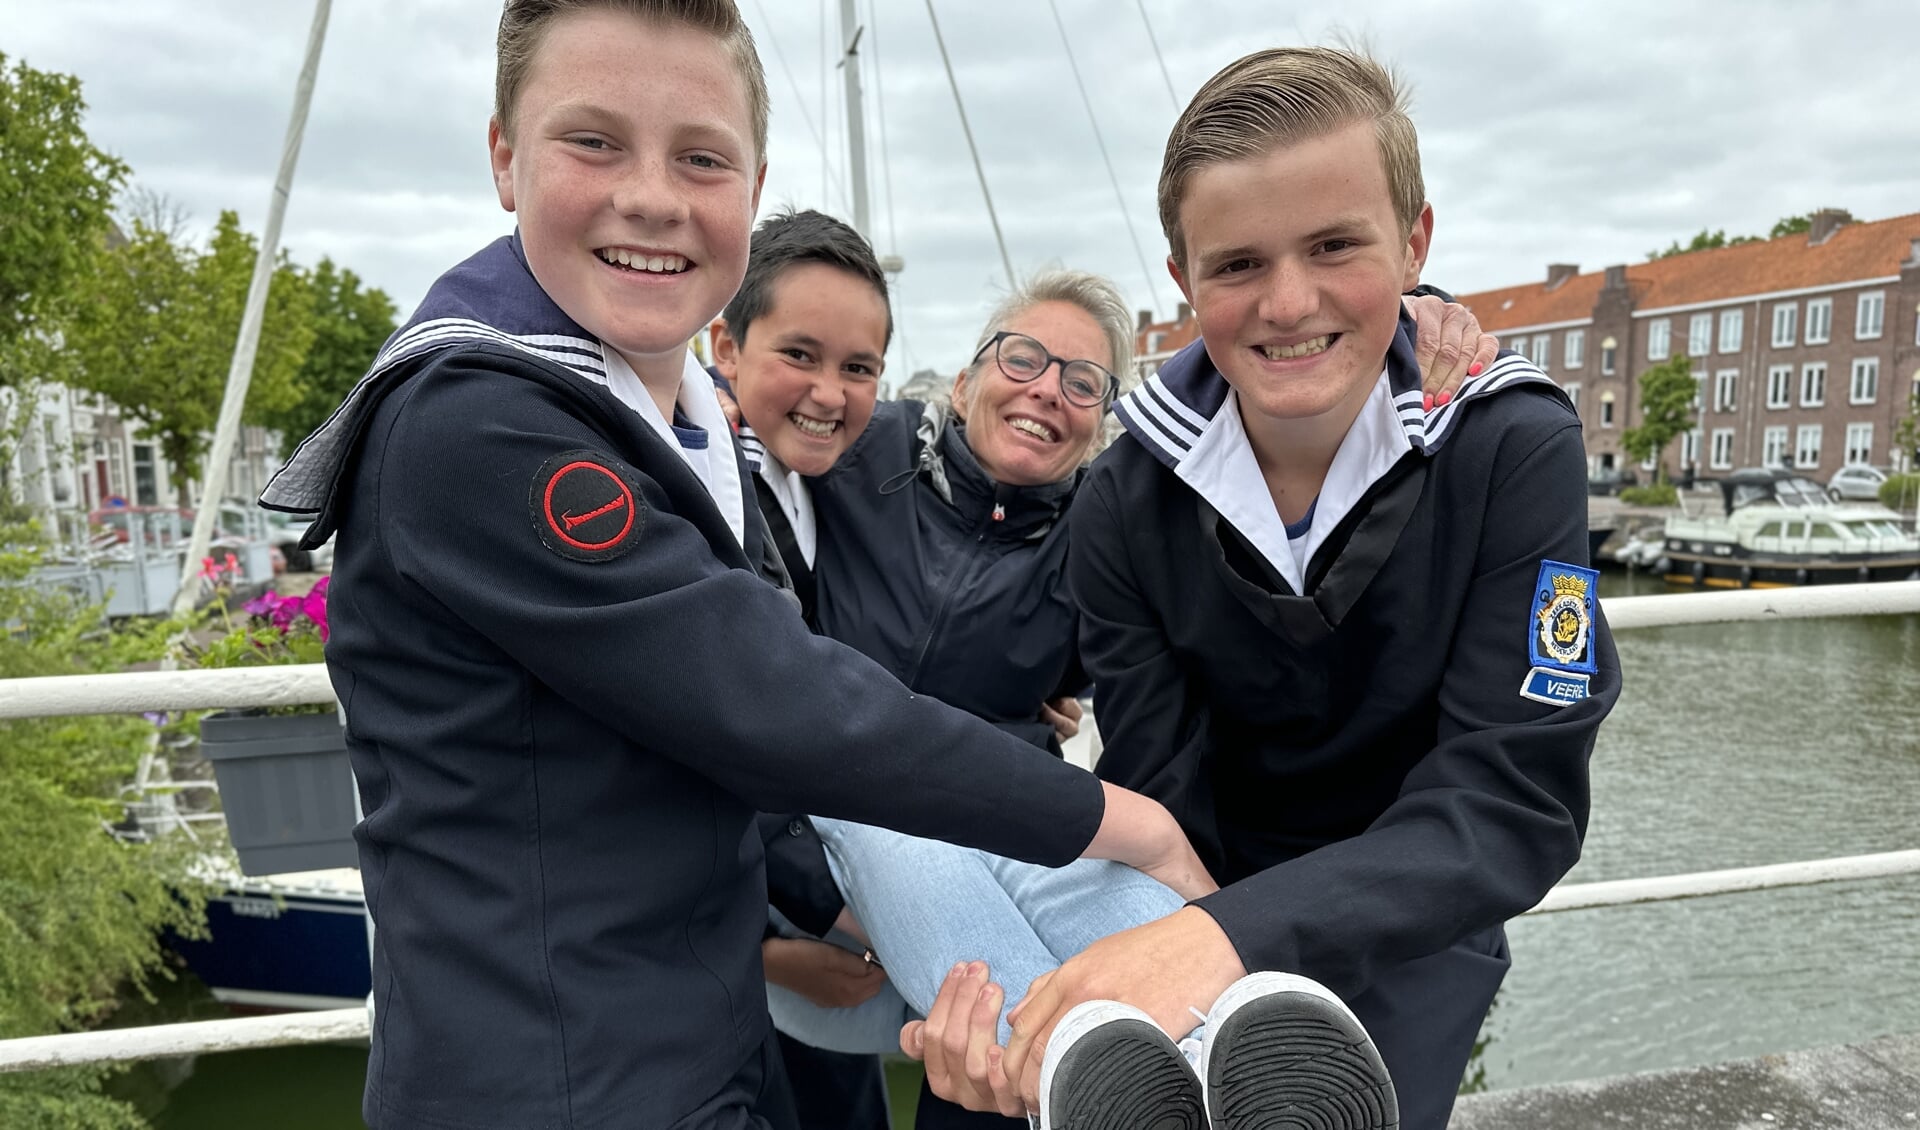 De Middelburgse havenmeester Susanne Maes wordt op handen gedragen door drie leden van Zeekadetkorps Veere